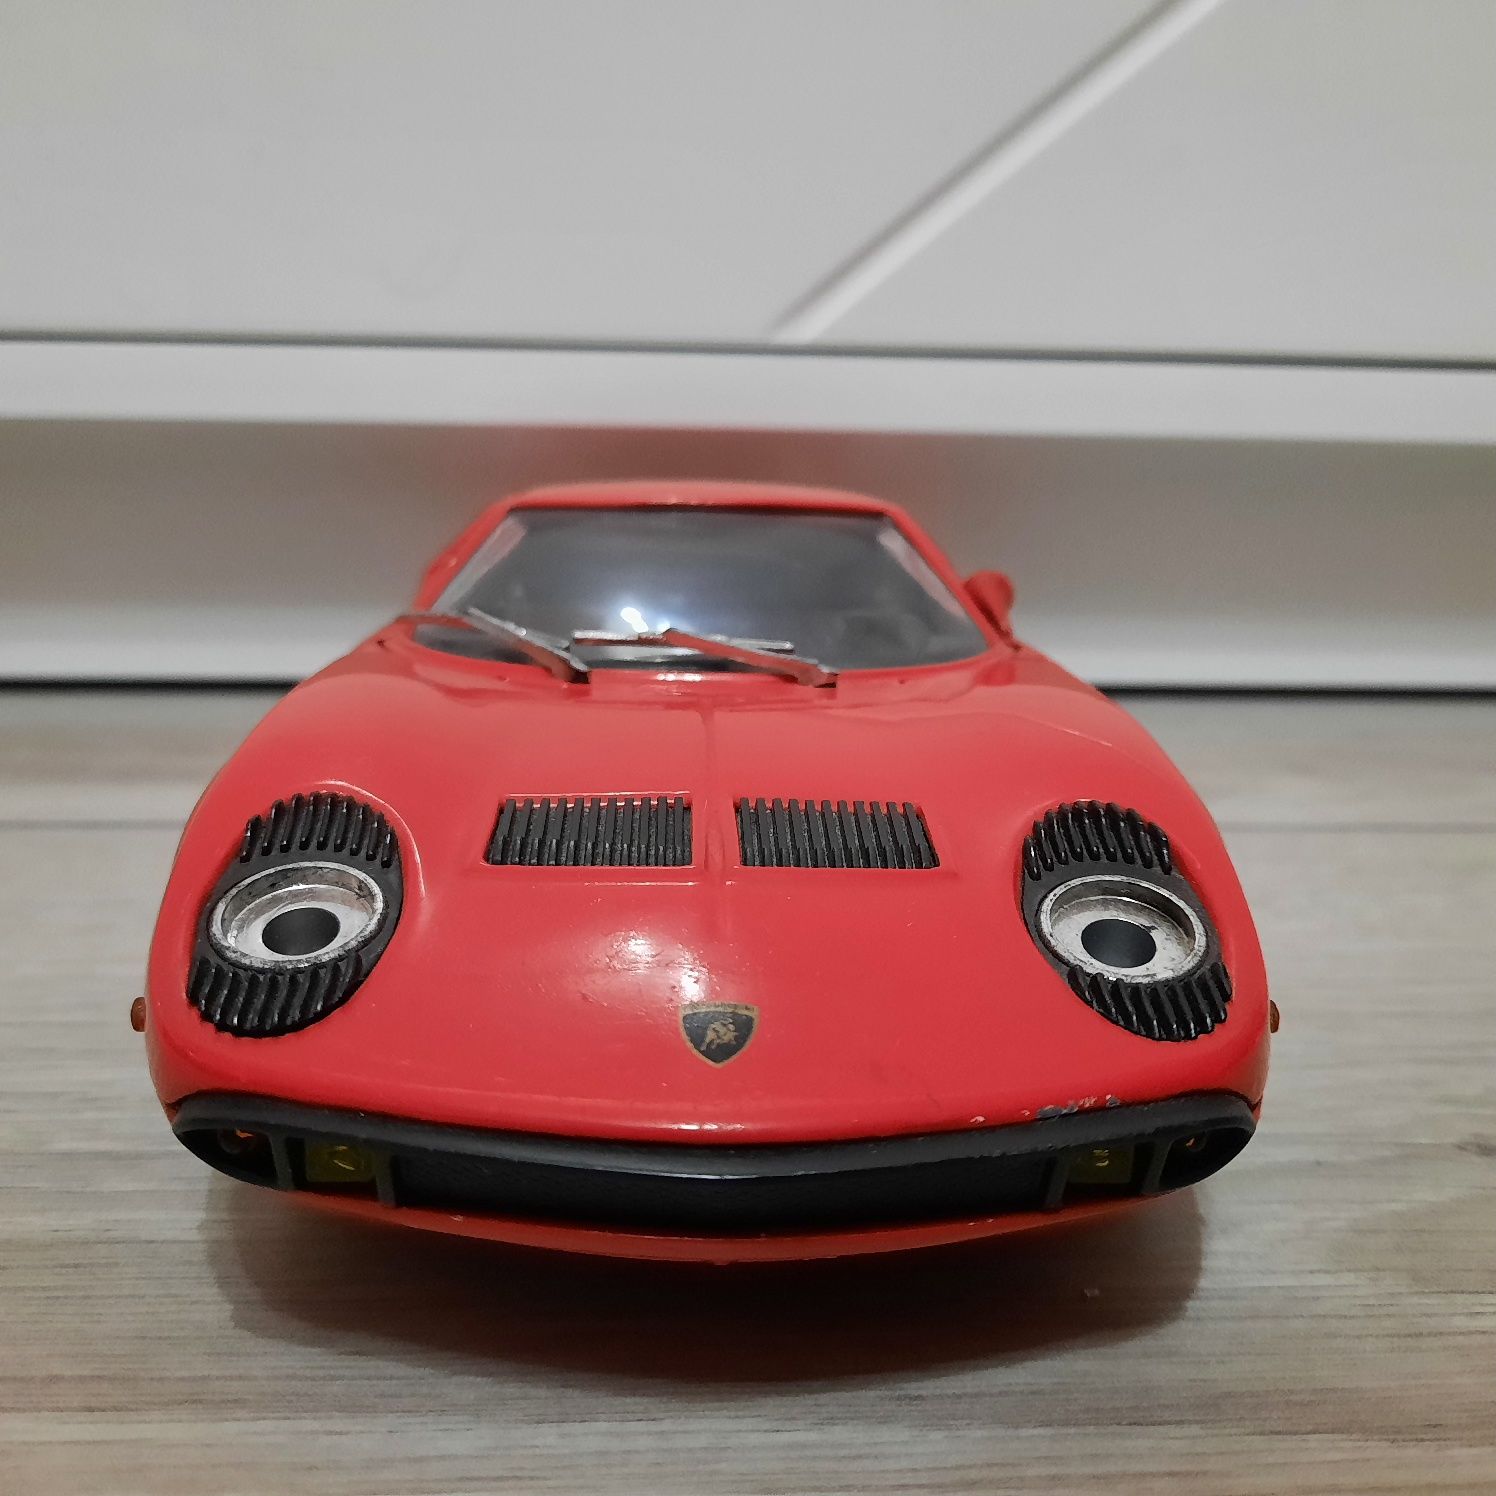 OKAZJA !!! Auto Samochód Kolekcjonerski Lamborghini Miura ANSON 1:18